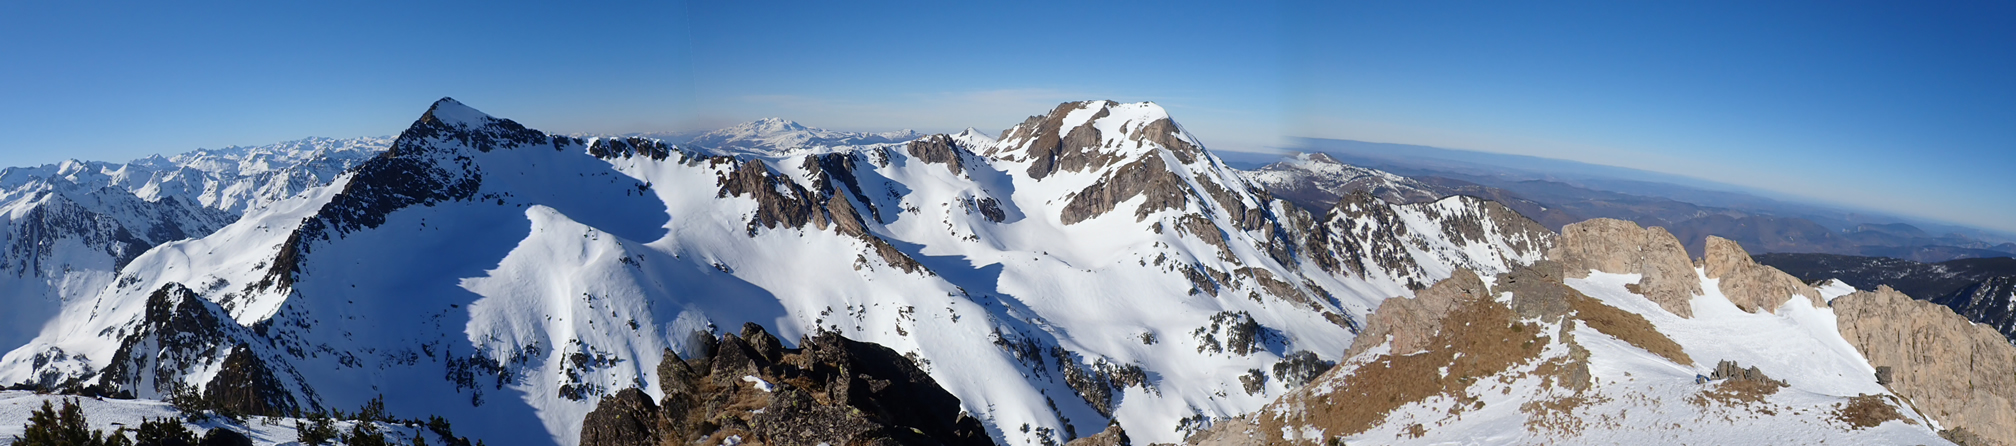 Panorámica desde la cima del Pic de La Tribuna, 2.499 mts., el Roc Blanc en el centro y el Pic de Baxouillade a la derecha